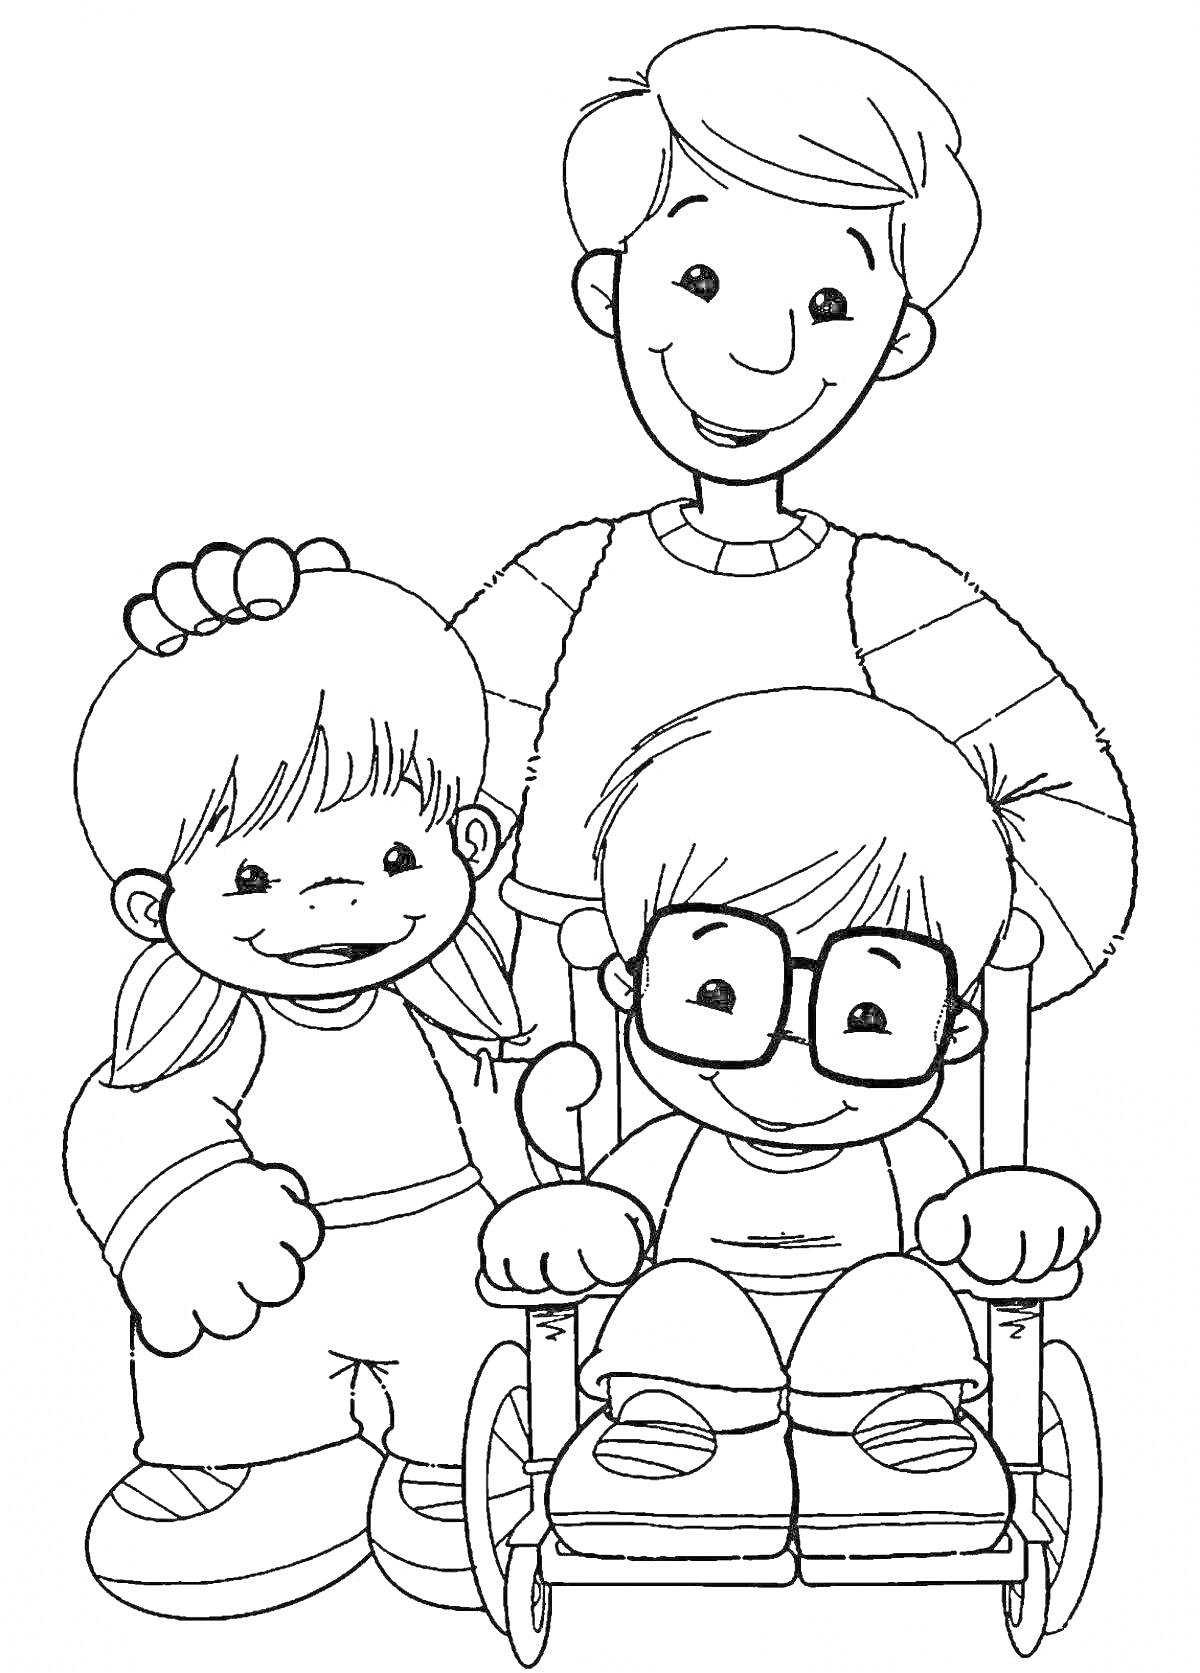 дети с опекуном и ребенок в инвалидном кресле